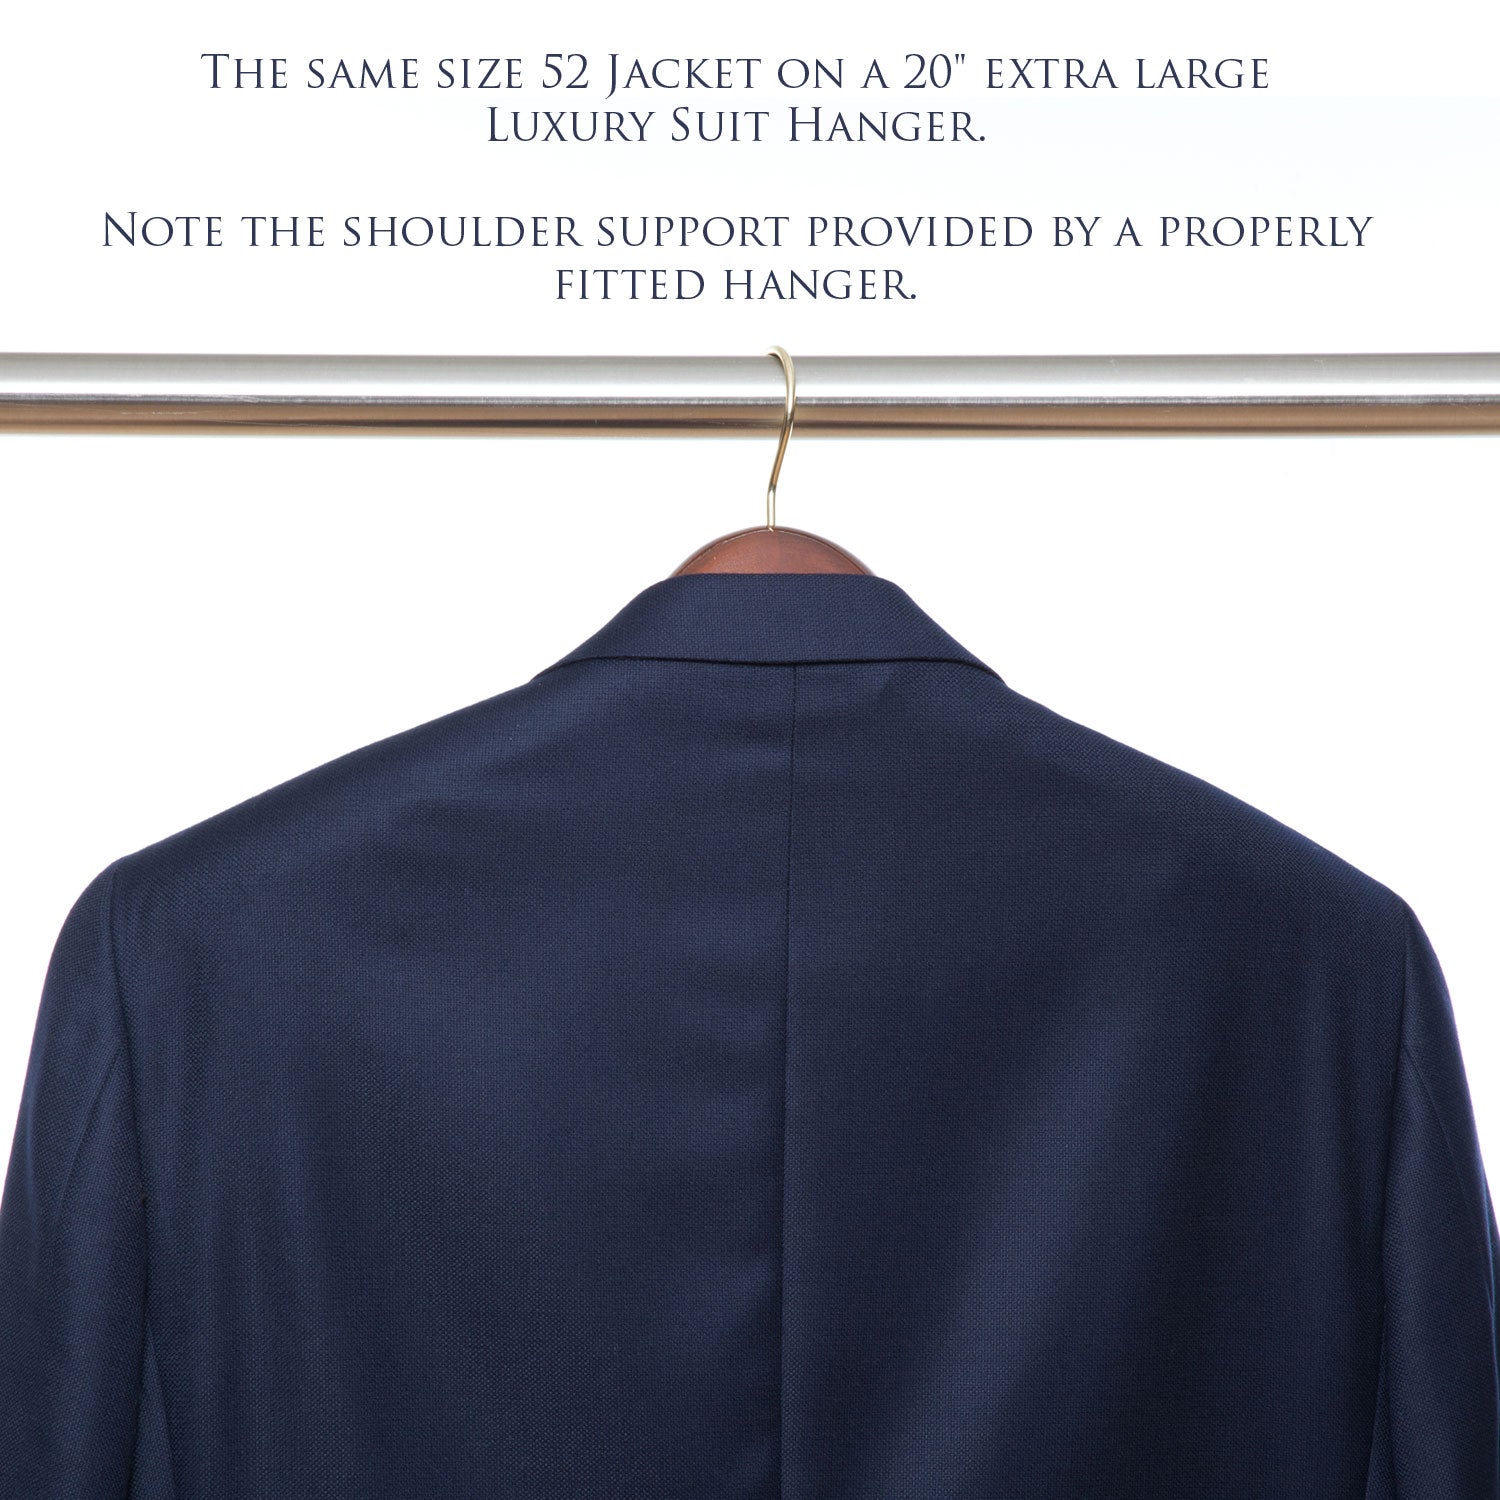 http://www.kirbyallison.com/cdn/shop/products/75g-s-luxury-wooden-suit-hanger-single-9.jpg?v=1666722293&width=2000